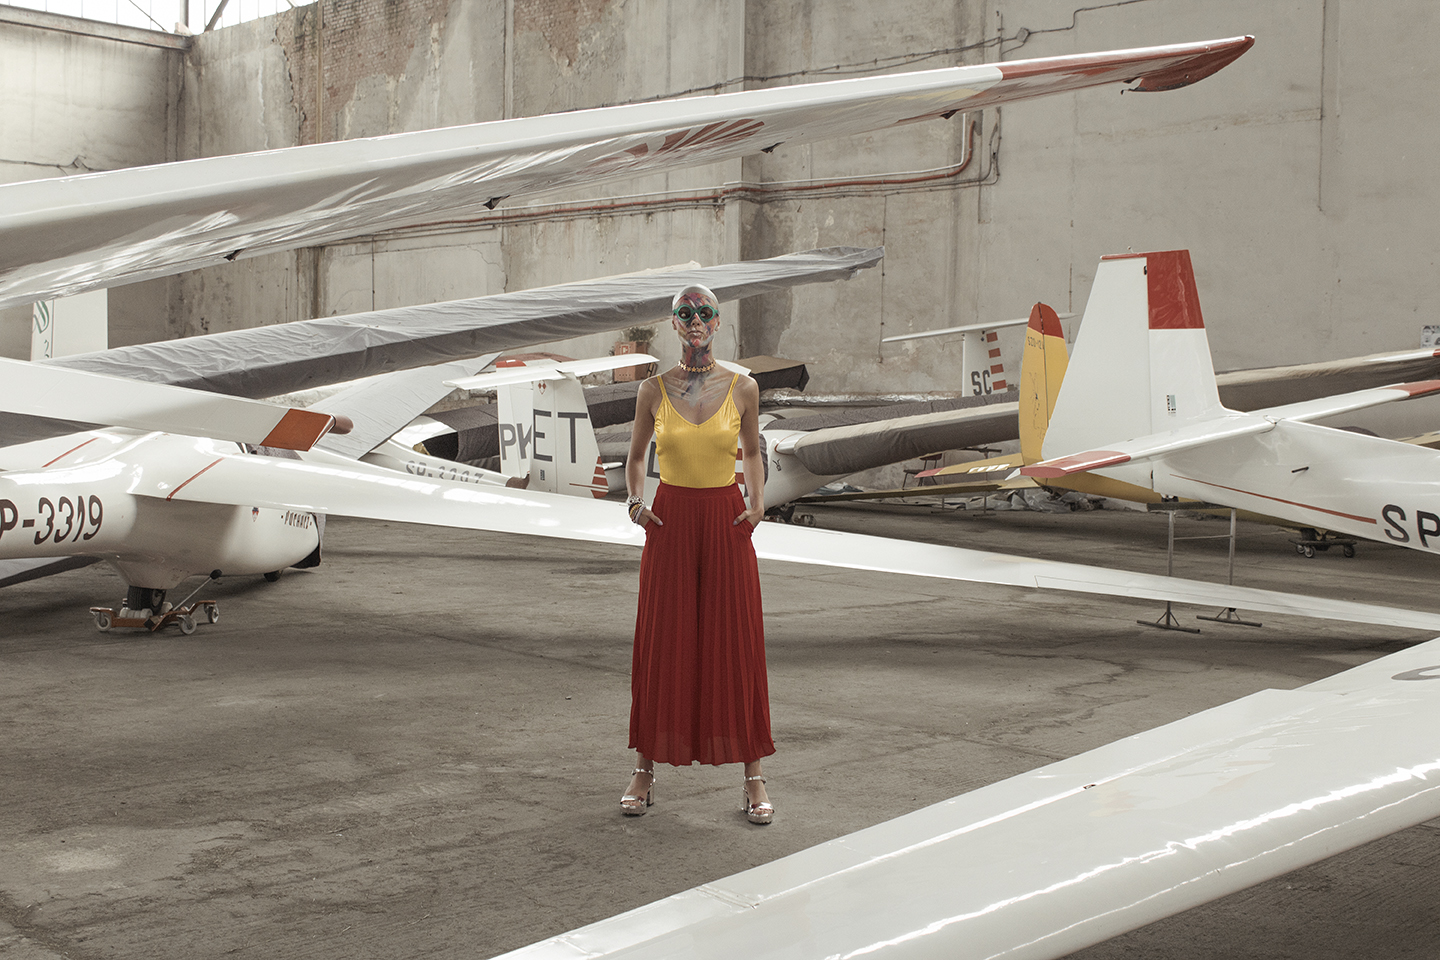 Kobieta ubrana w czerwoną spódnicę i żółtą bluzkę stojąca w otoczeniu samolotów